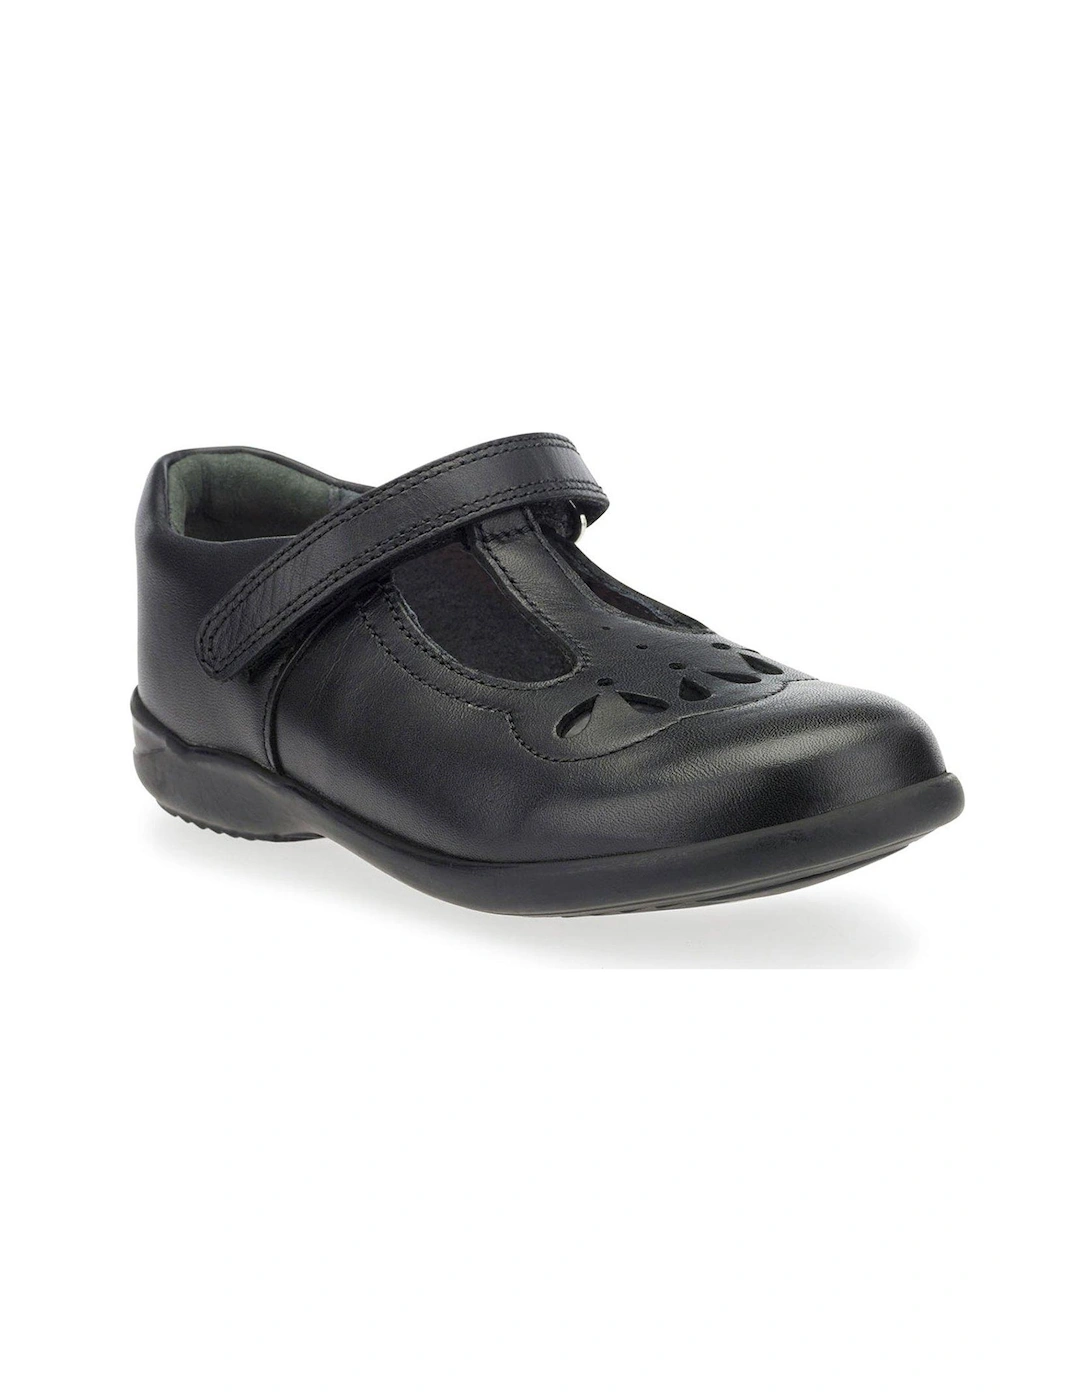 Poppy Tbar School Shoe - Black, 2 of 1